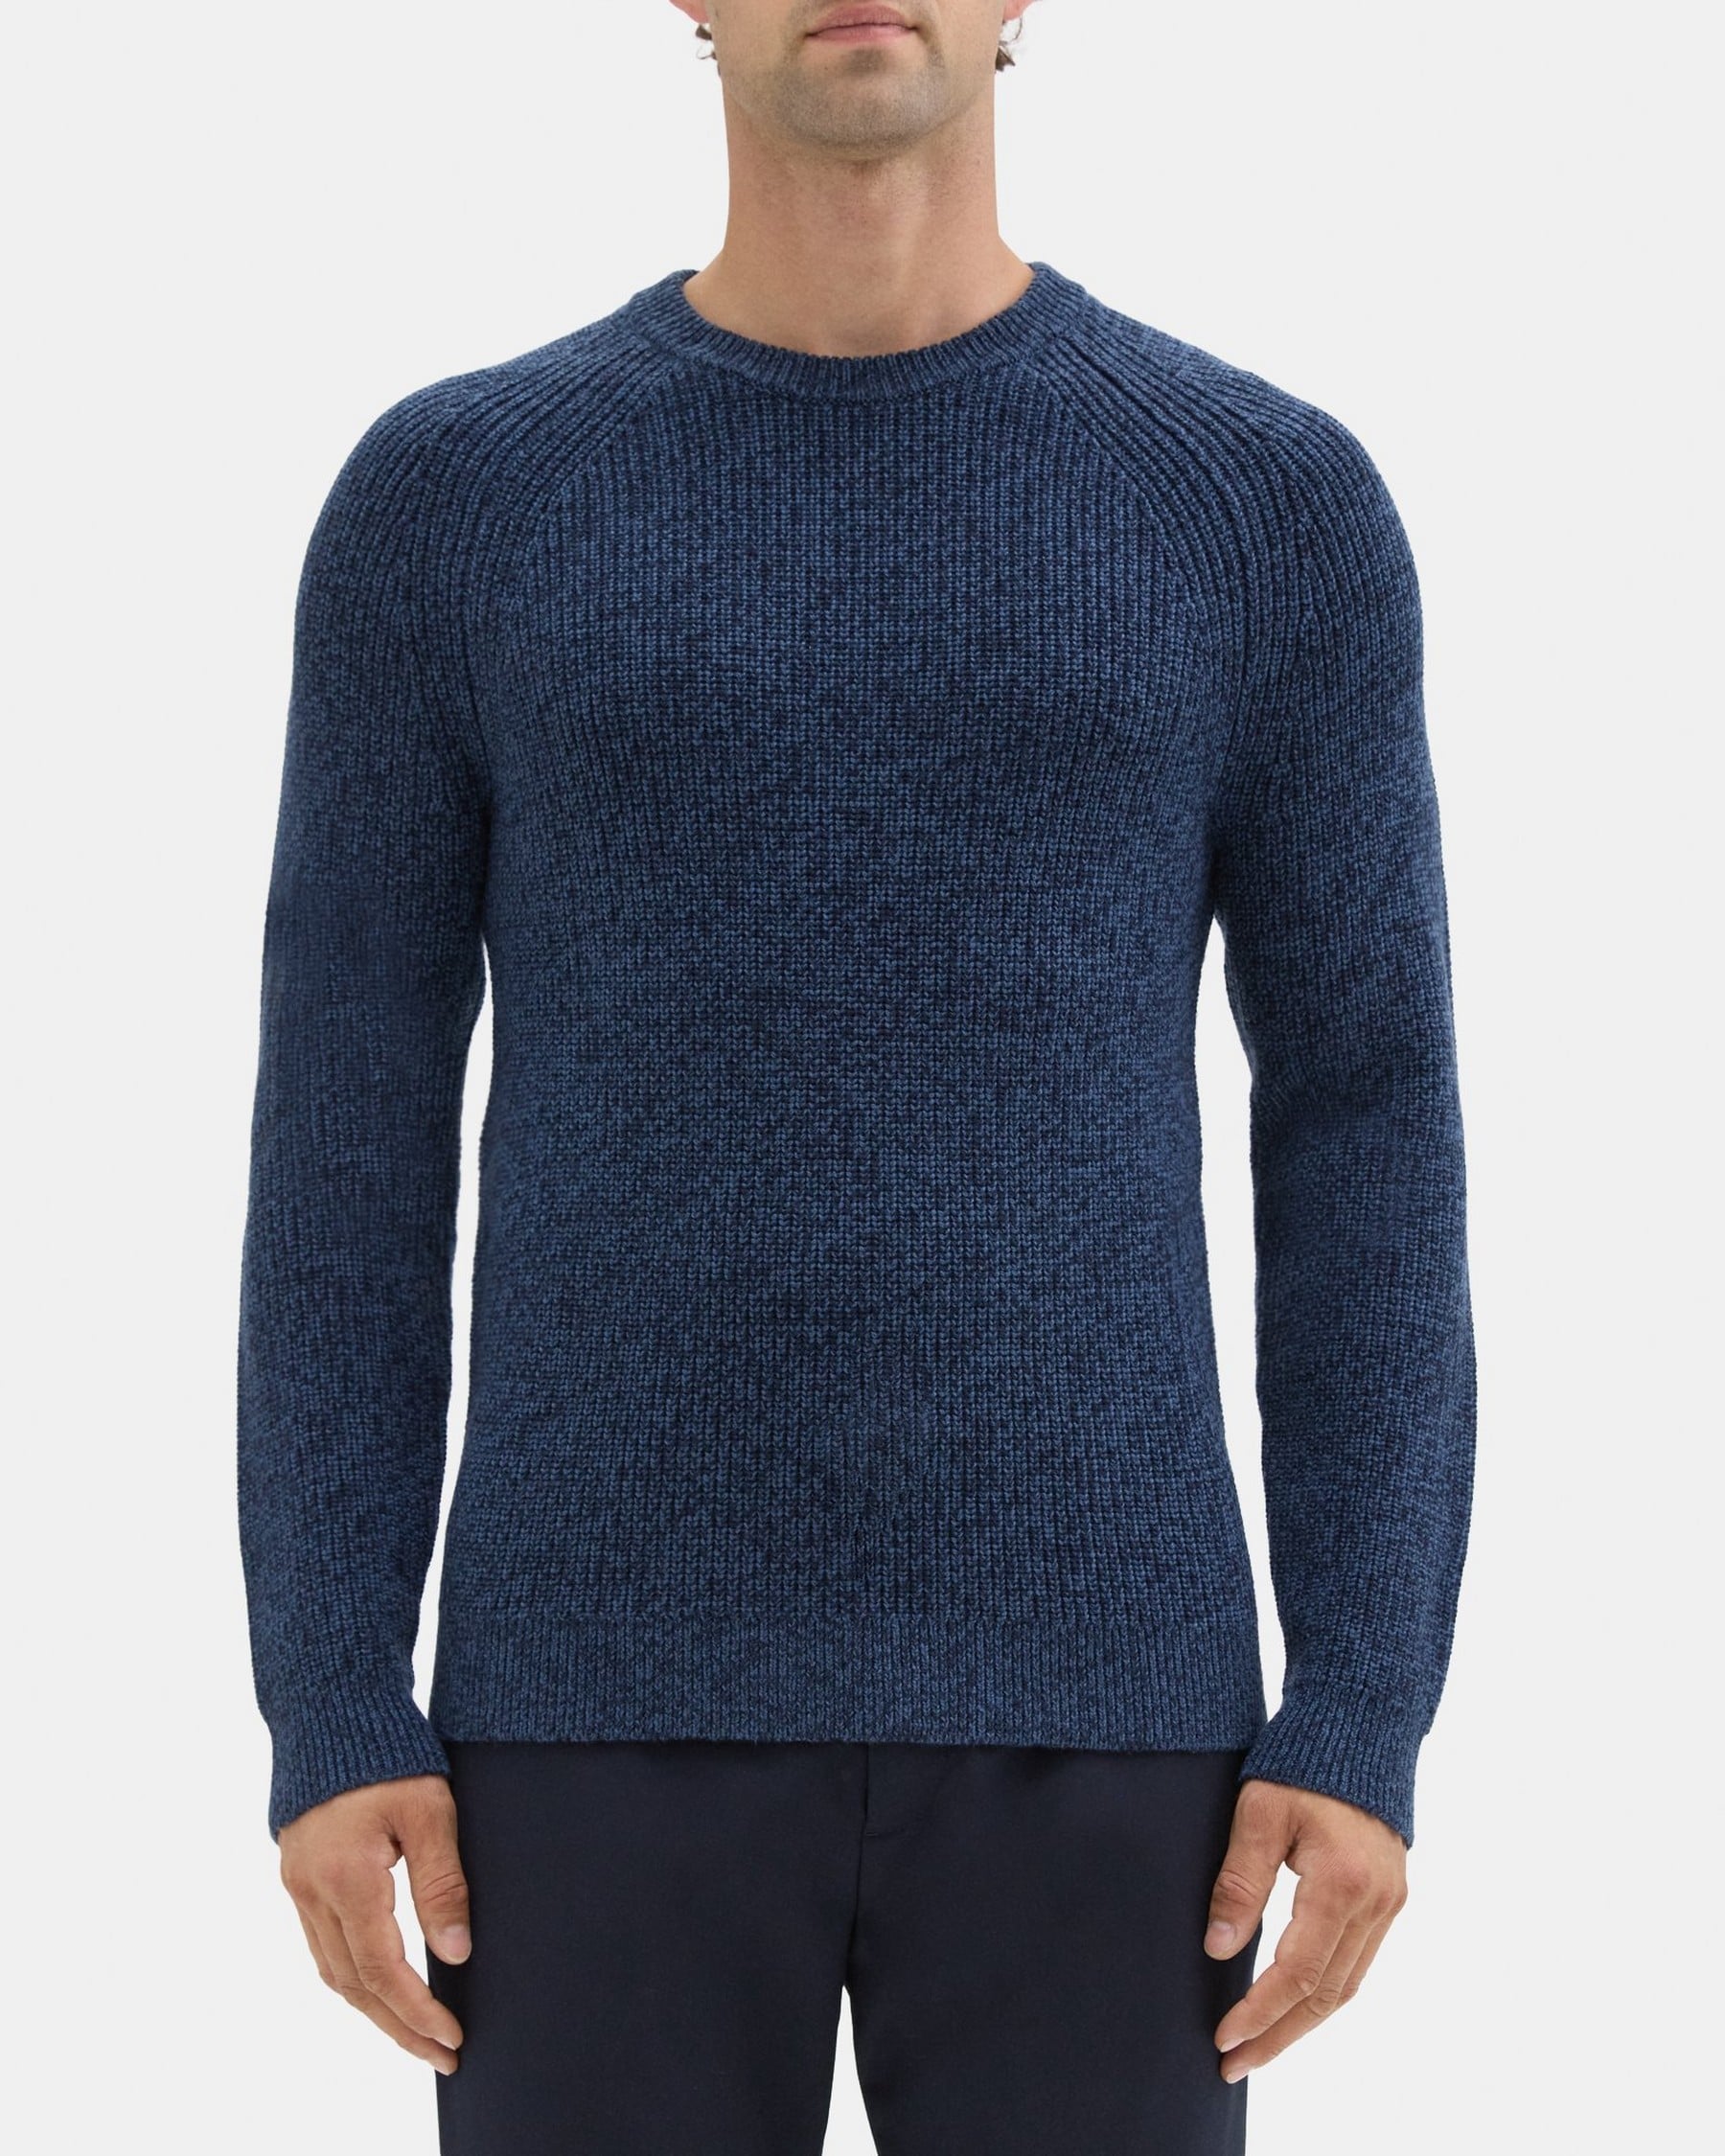 띠어리 Theory Crewneck Sweater in Merino Wool,AIRFORCE/BALTIC